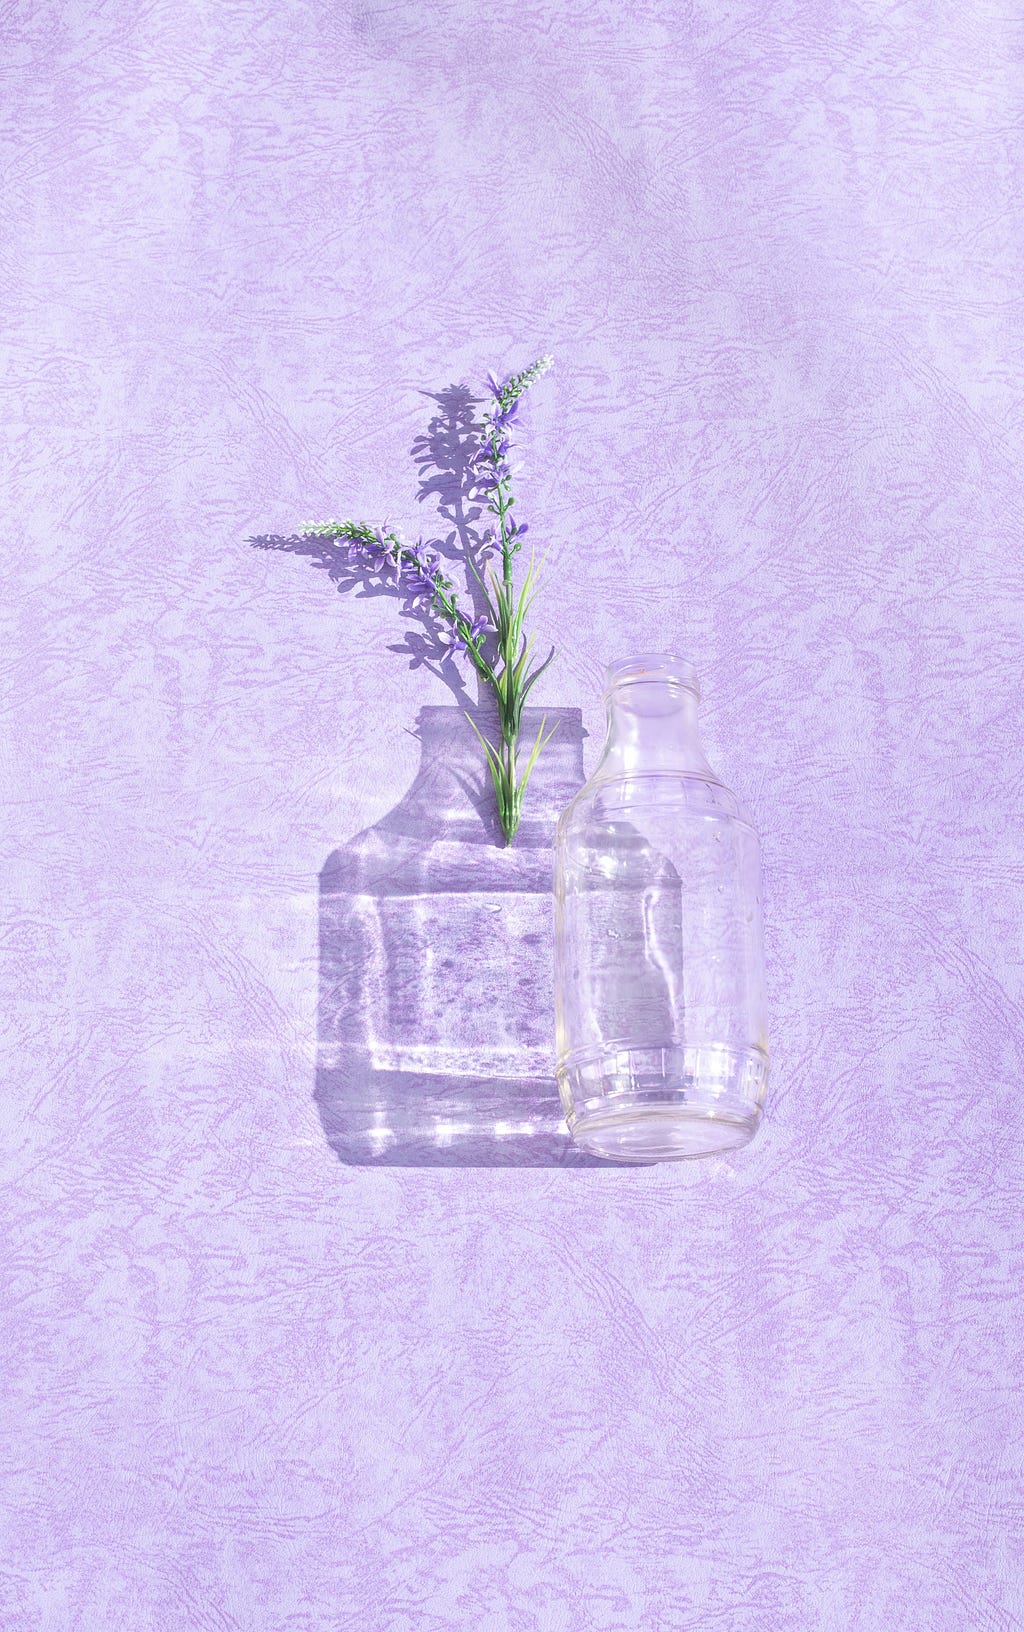 Fundo lilás com um vaso de vidro transparente ao lado direito e uma flor de lavanda do lado esquerdo se encaixando na sombra do vase.